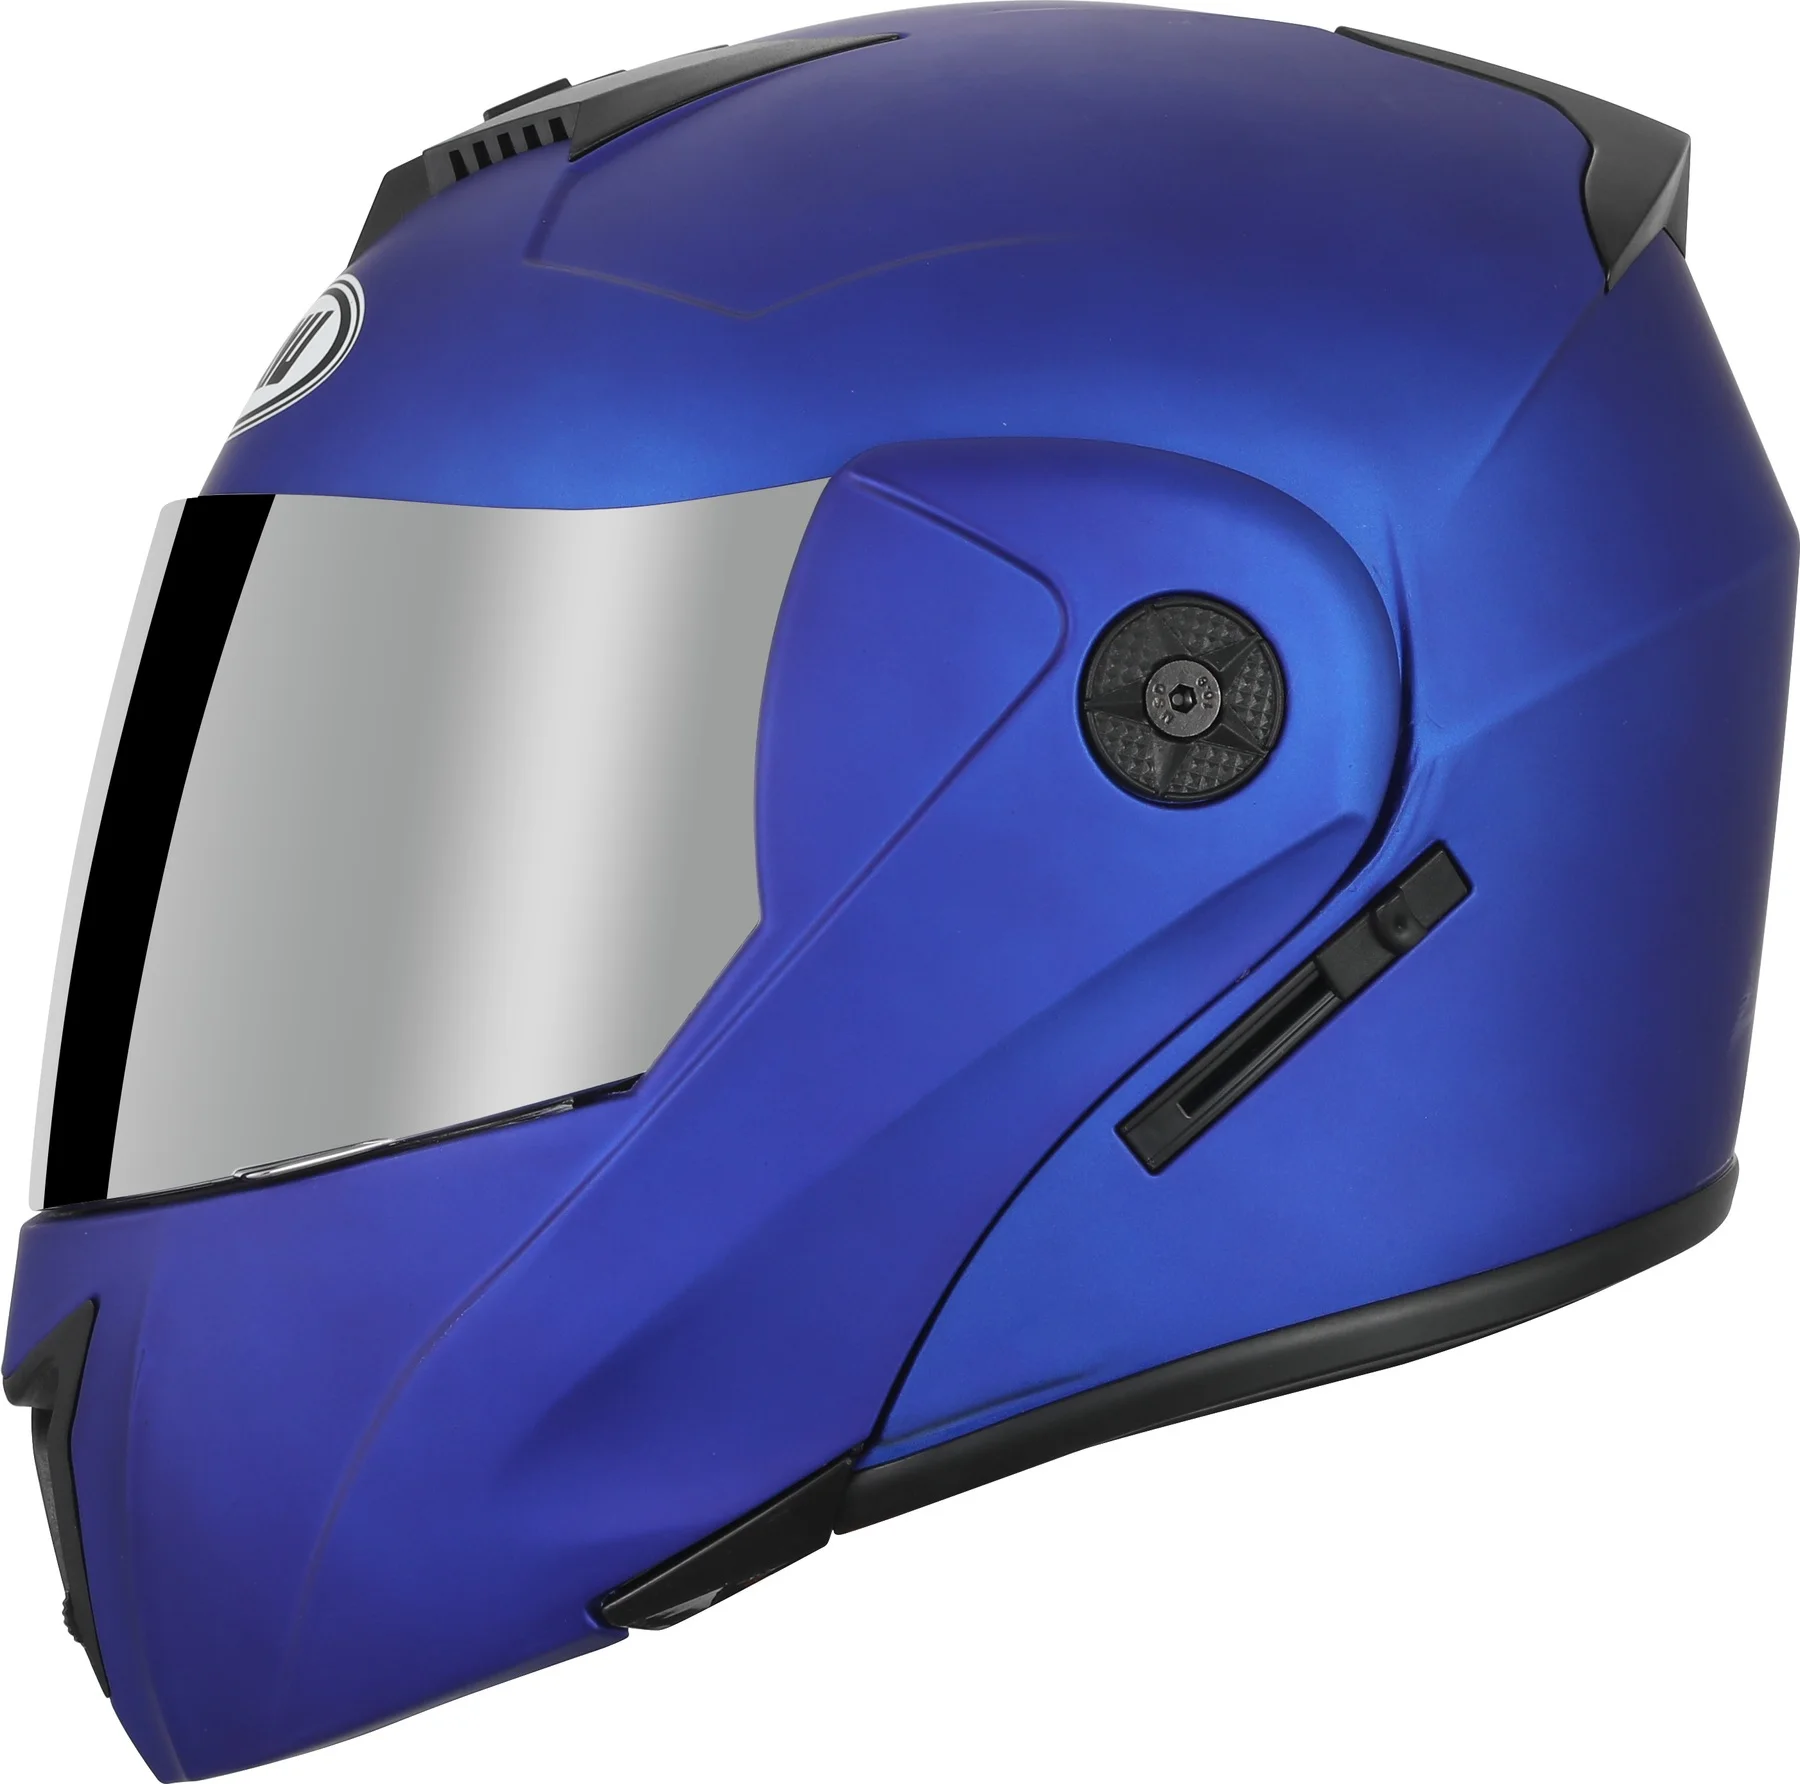 

Мотоциклетный шлем DAYU с откидной крышкой, защитный шлем для мотокросса, с двойными стеклами, гоночный шлем для езды на велосипеде по бездоро...